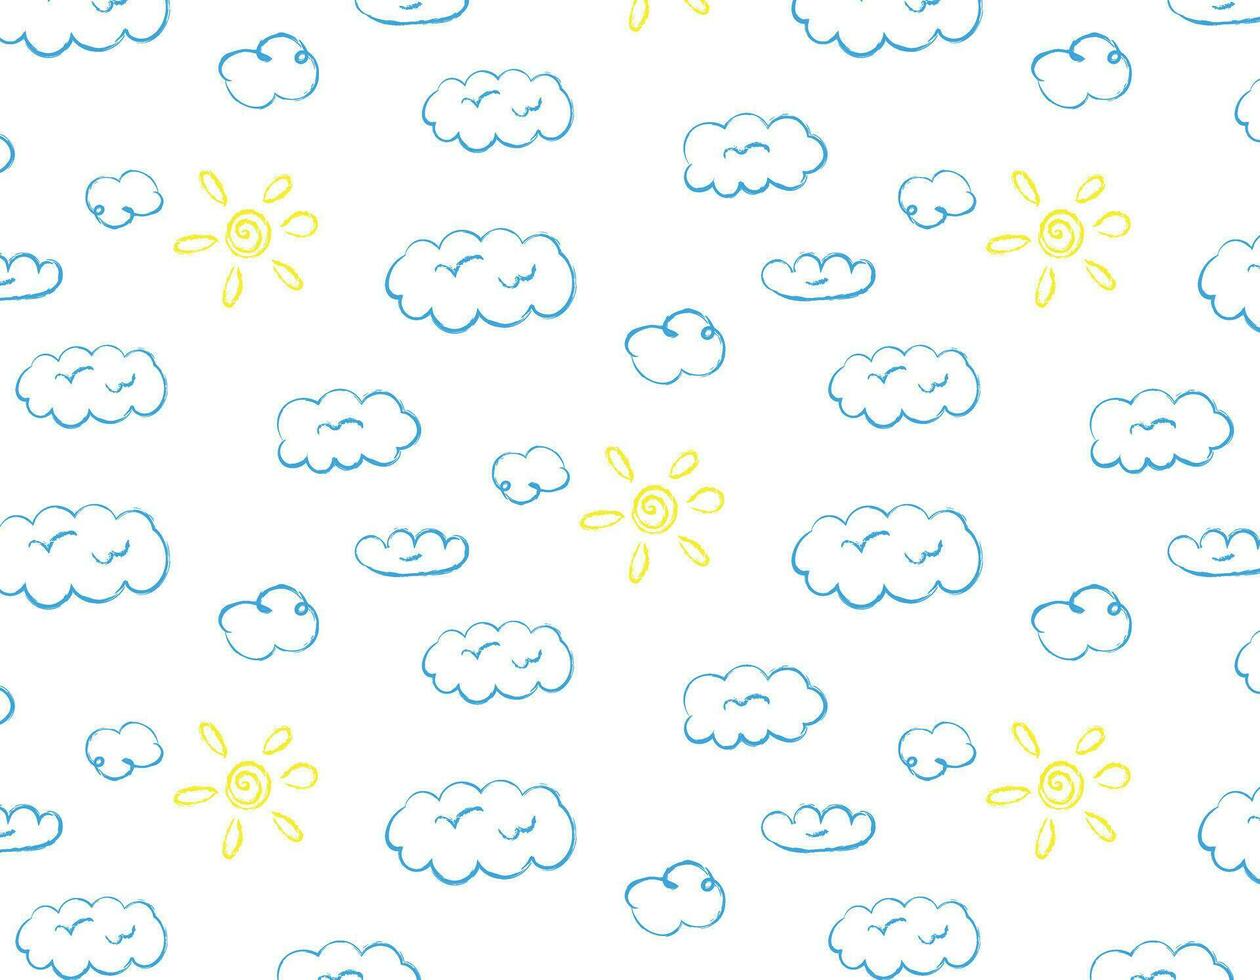 klotter mönster av moln och Sol, på en transparent bakgrund, barns design, element av natur. vektor grafik för skriva ut